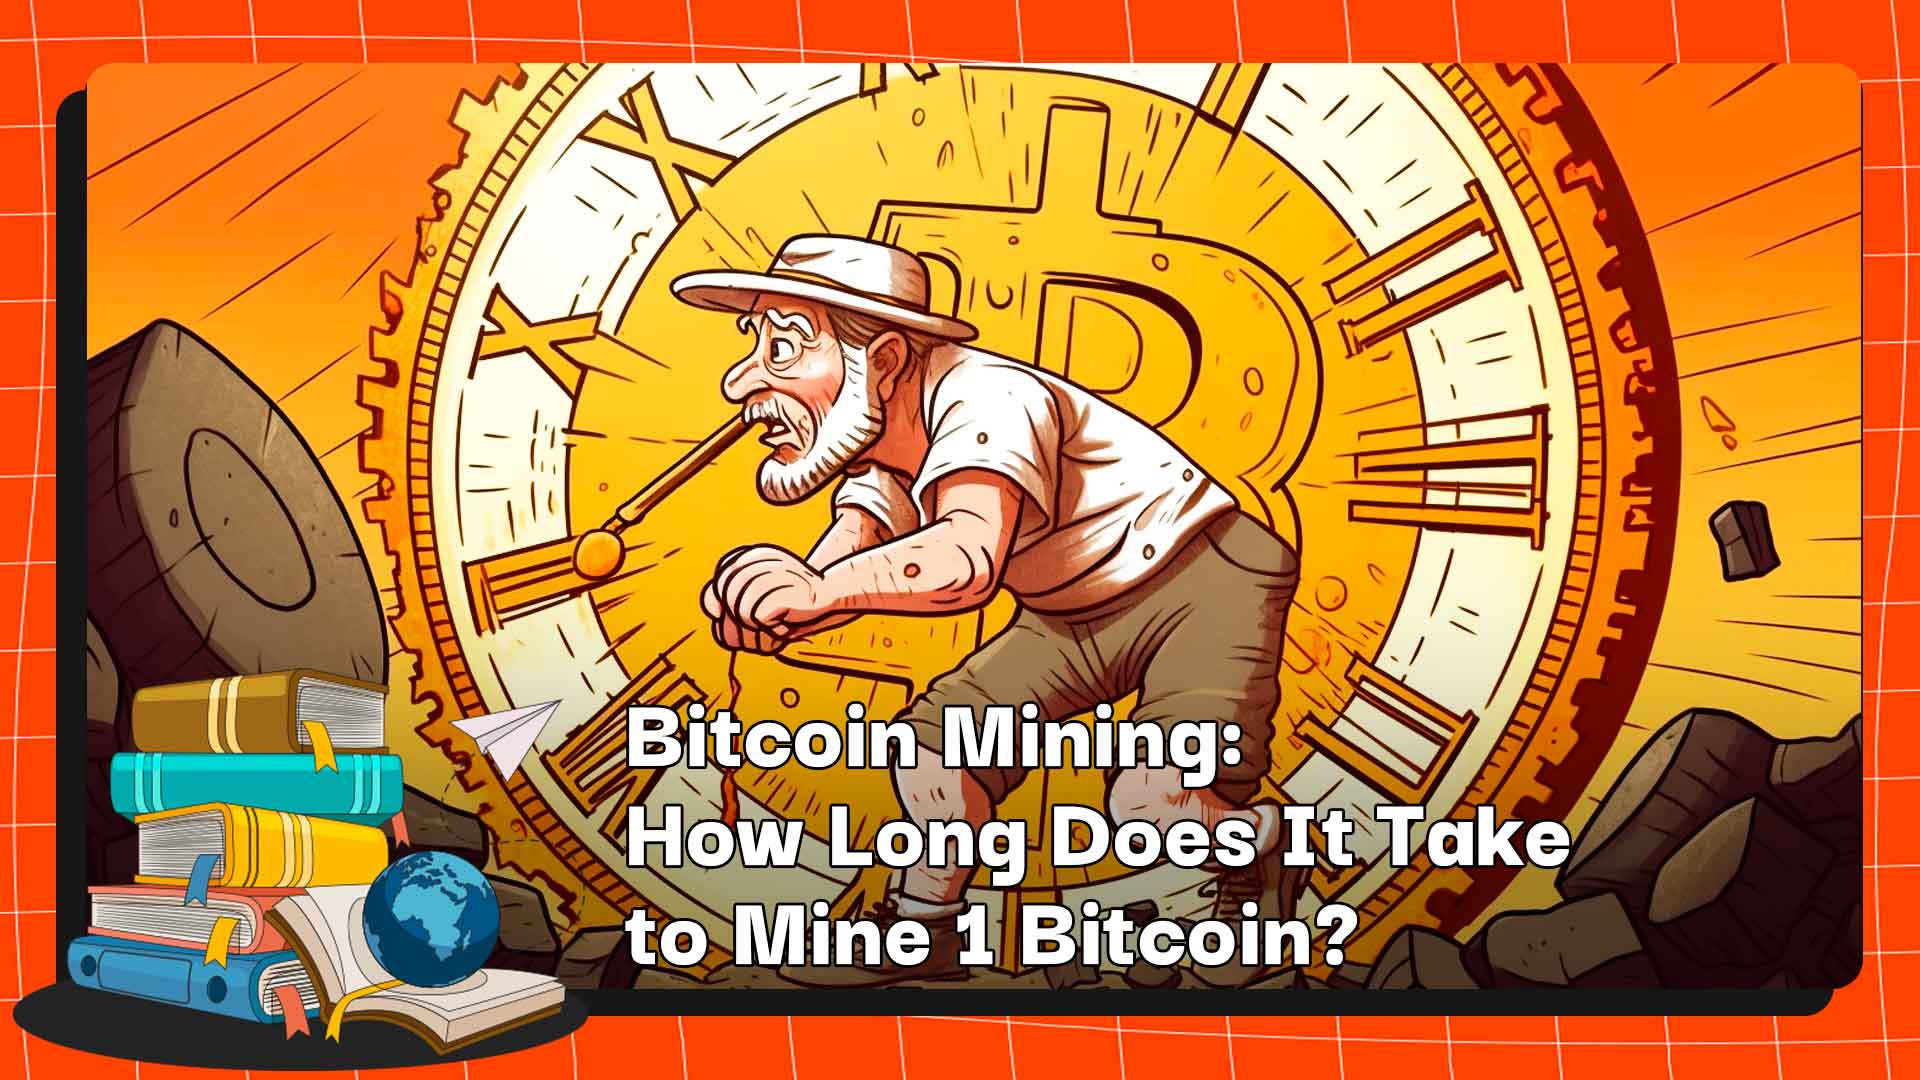 Mineração de Bitcoin: Quanto tempo leva para extrair 1 Bitcoin?